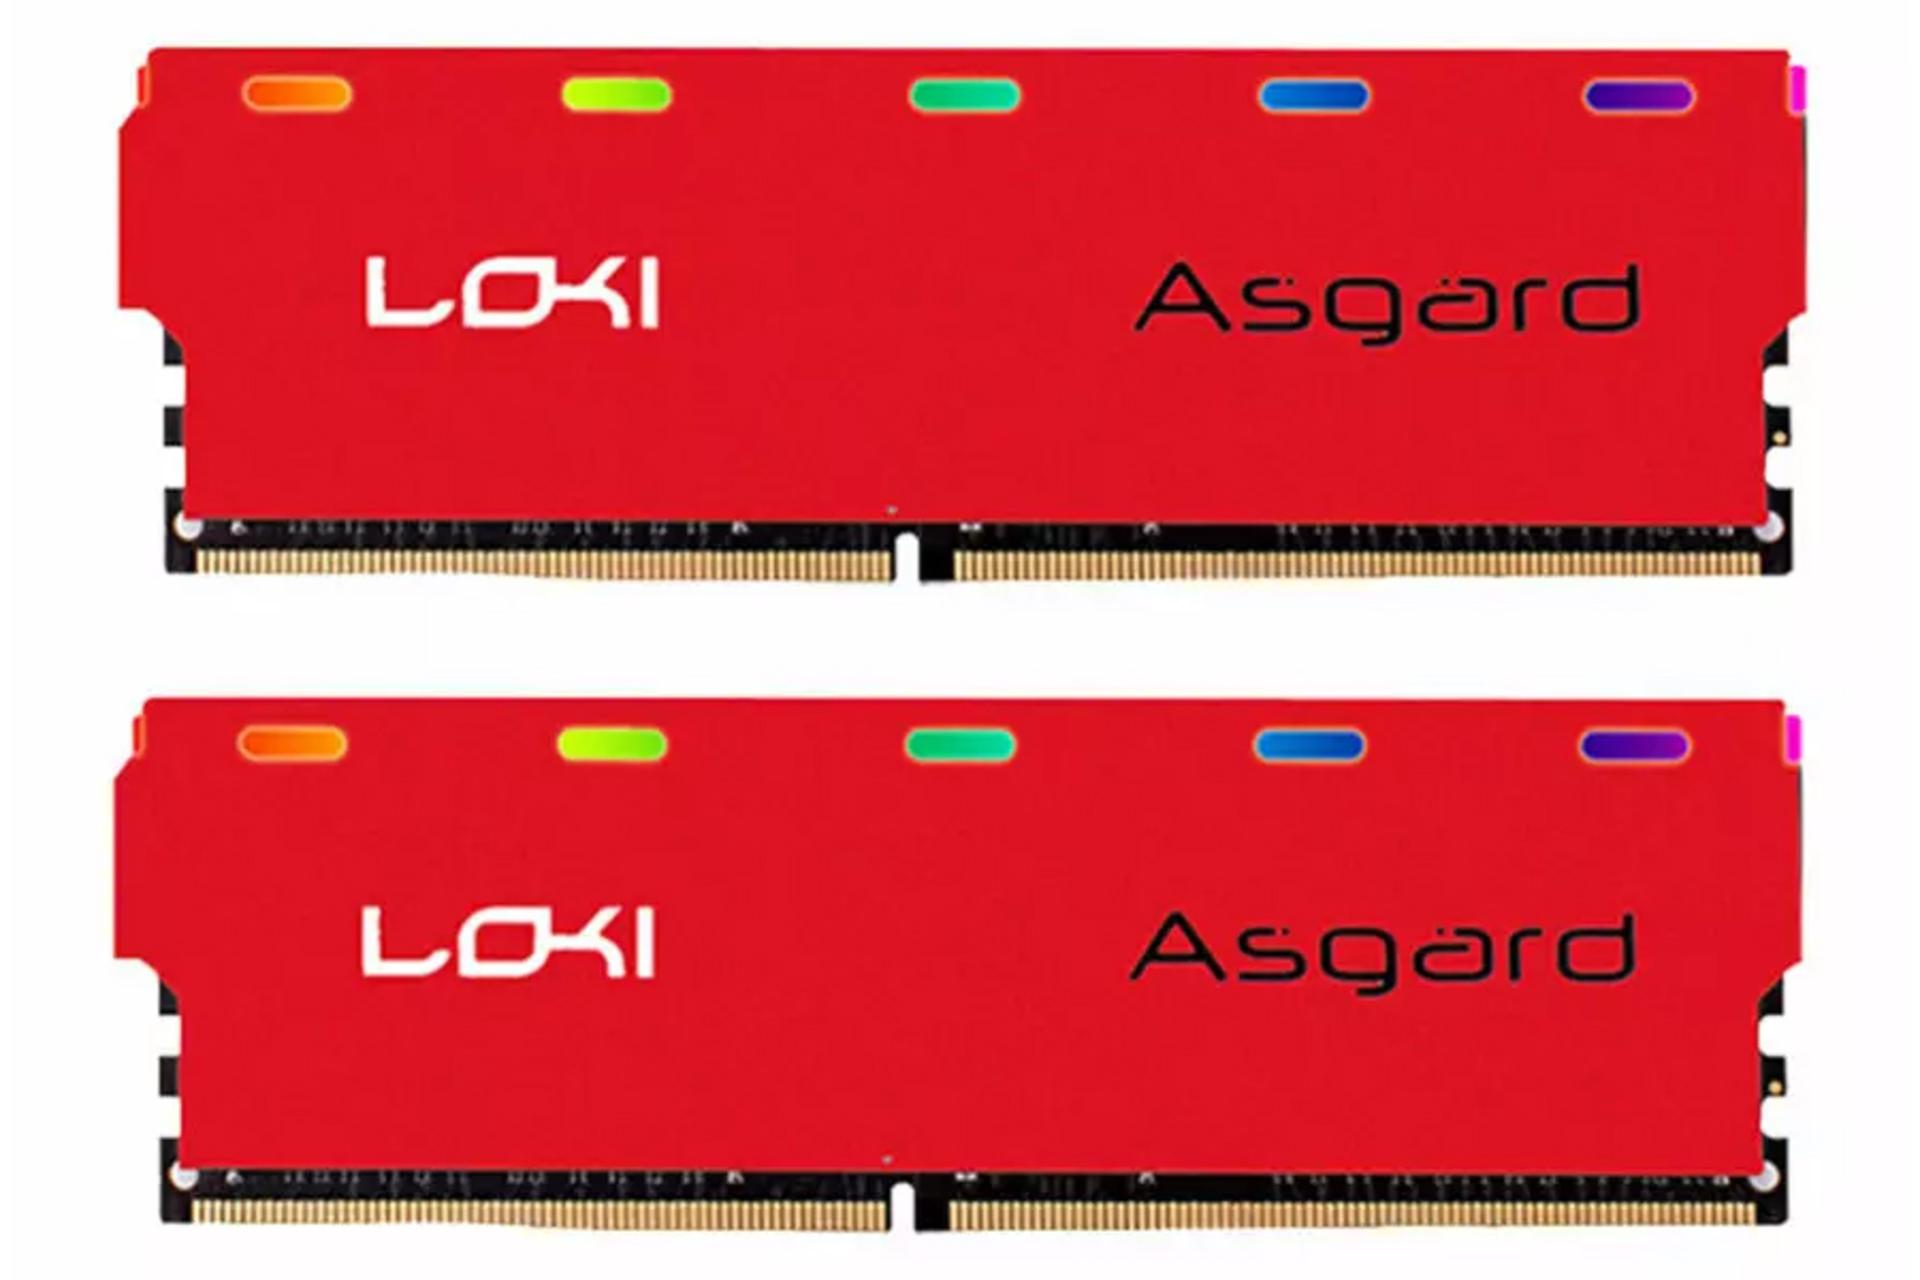 رم ازگارد Loki W1 ظرفیت 16 گیگابایت (2x8) از نوع DDR4-3000